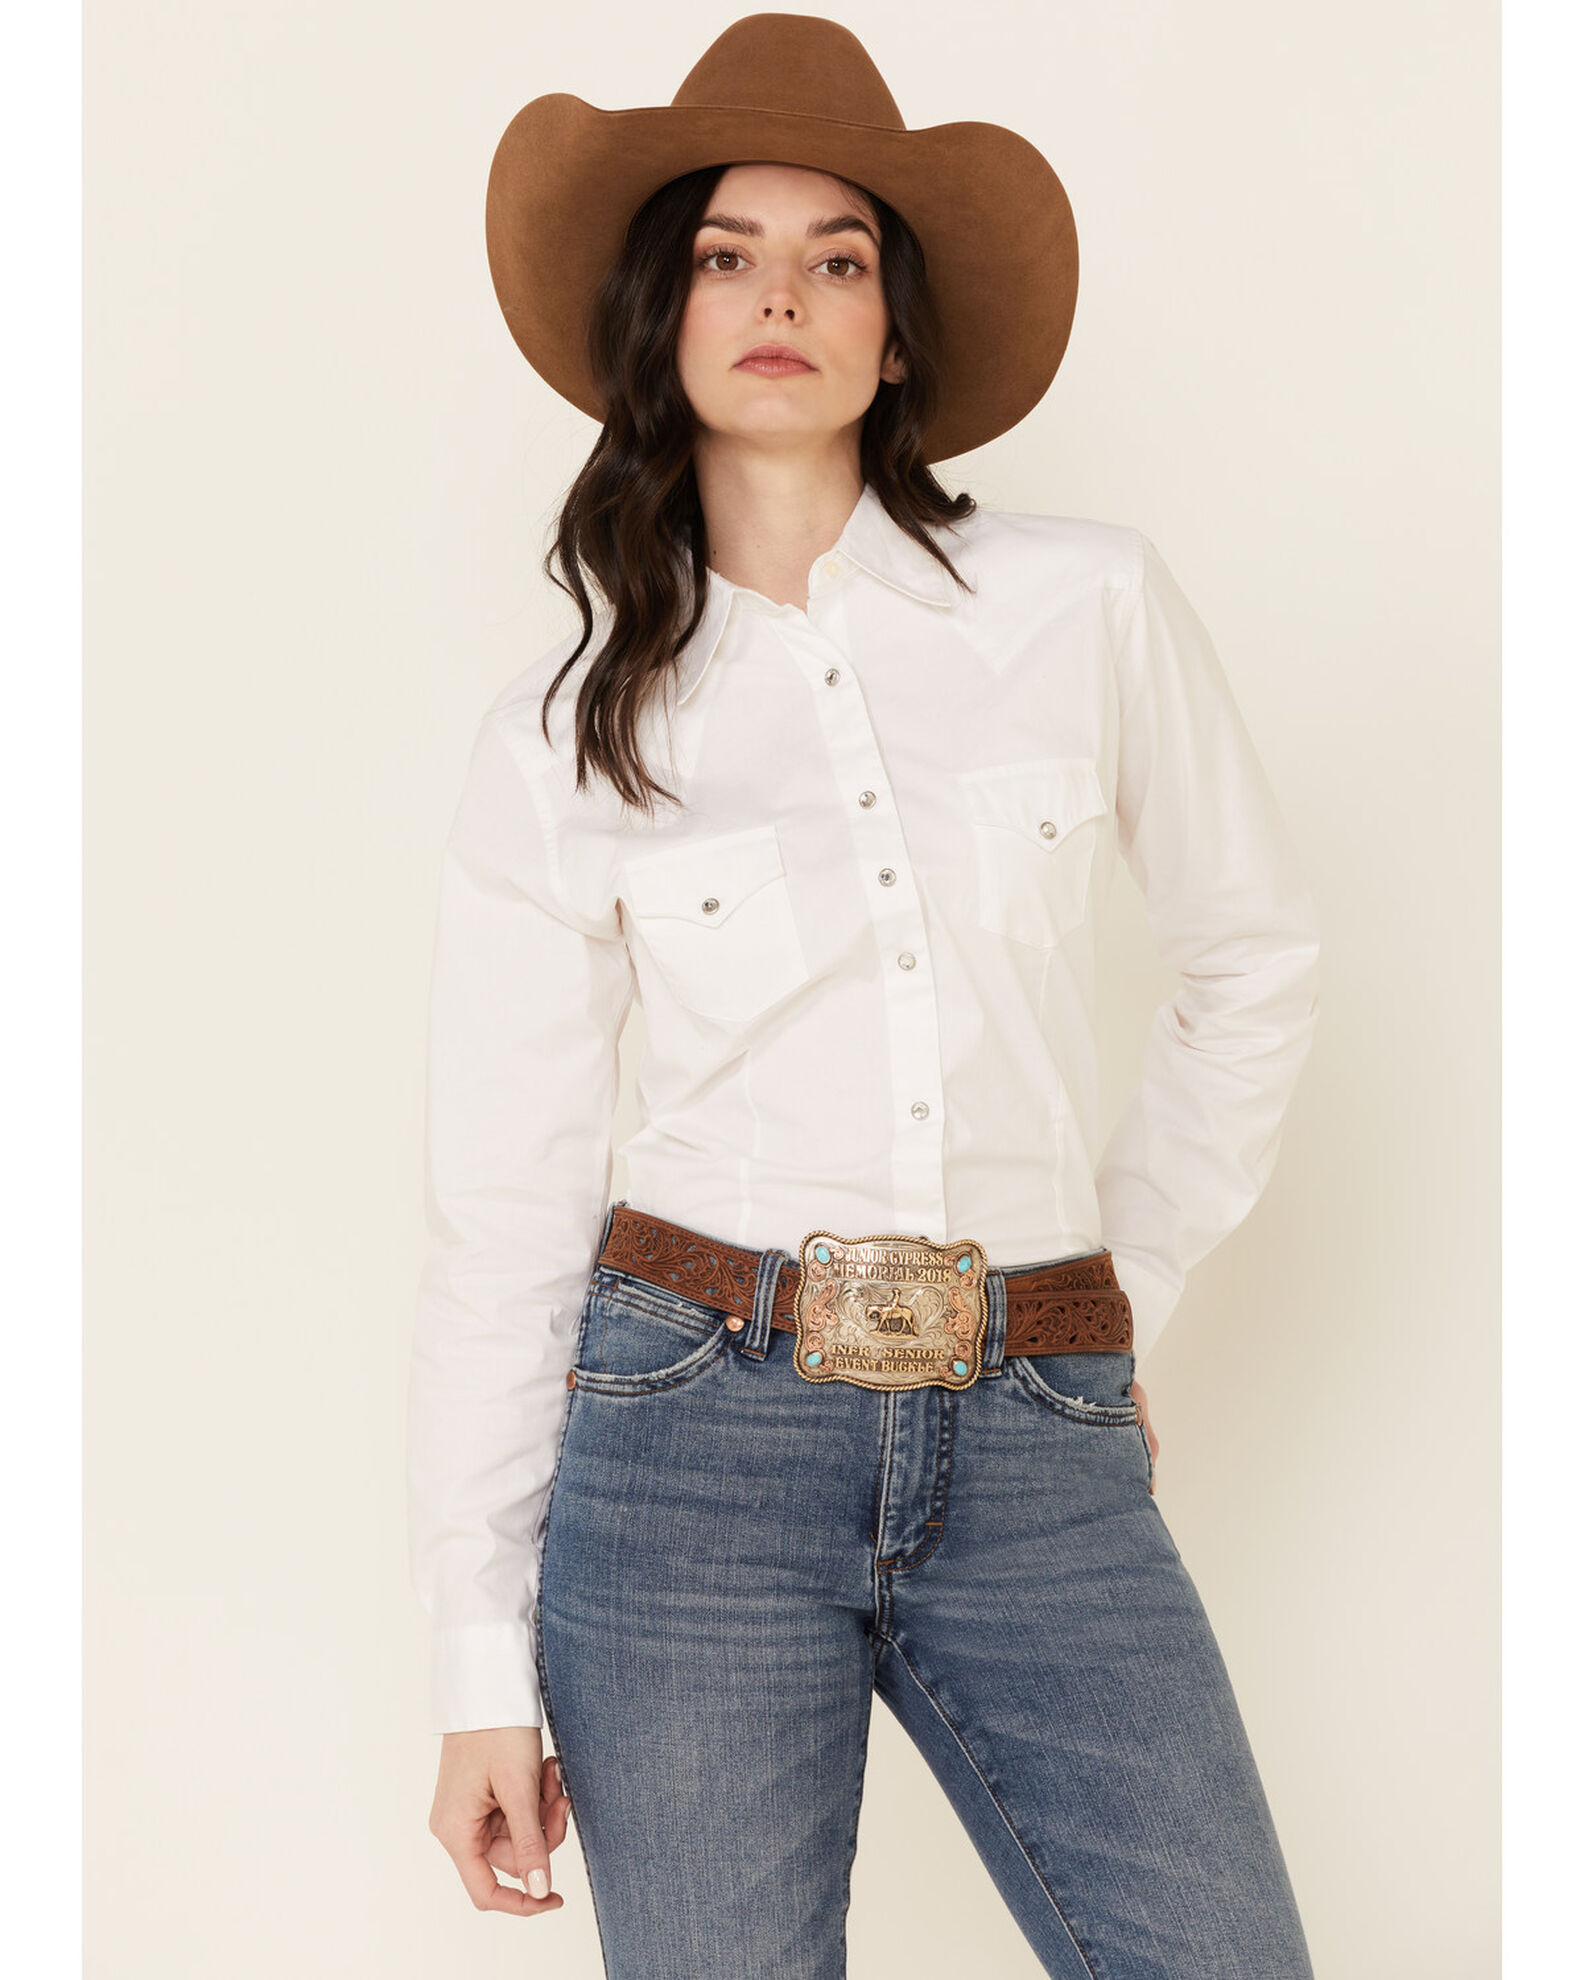 Wrangler Women's White Pearl Snap Long Sleeve Western Shirt | Boot Barn